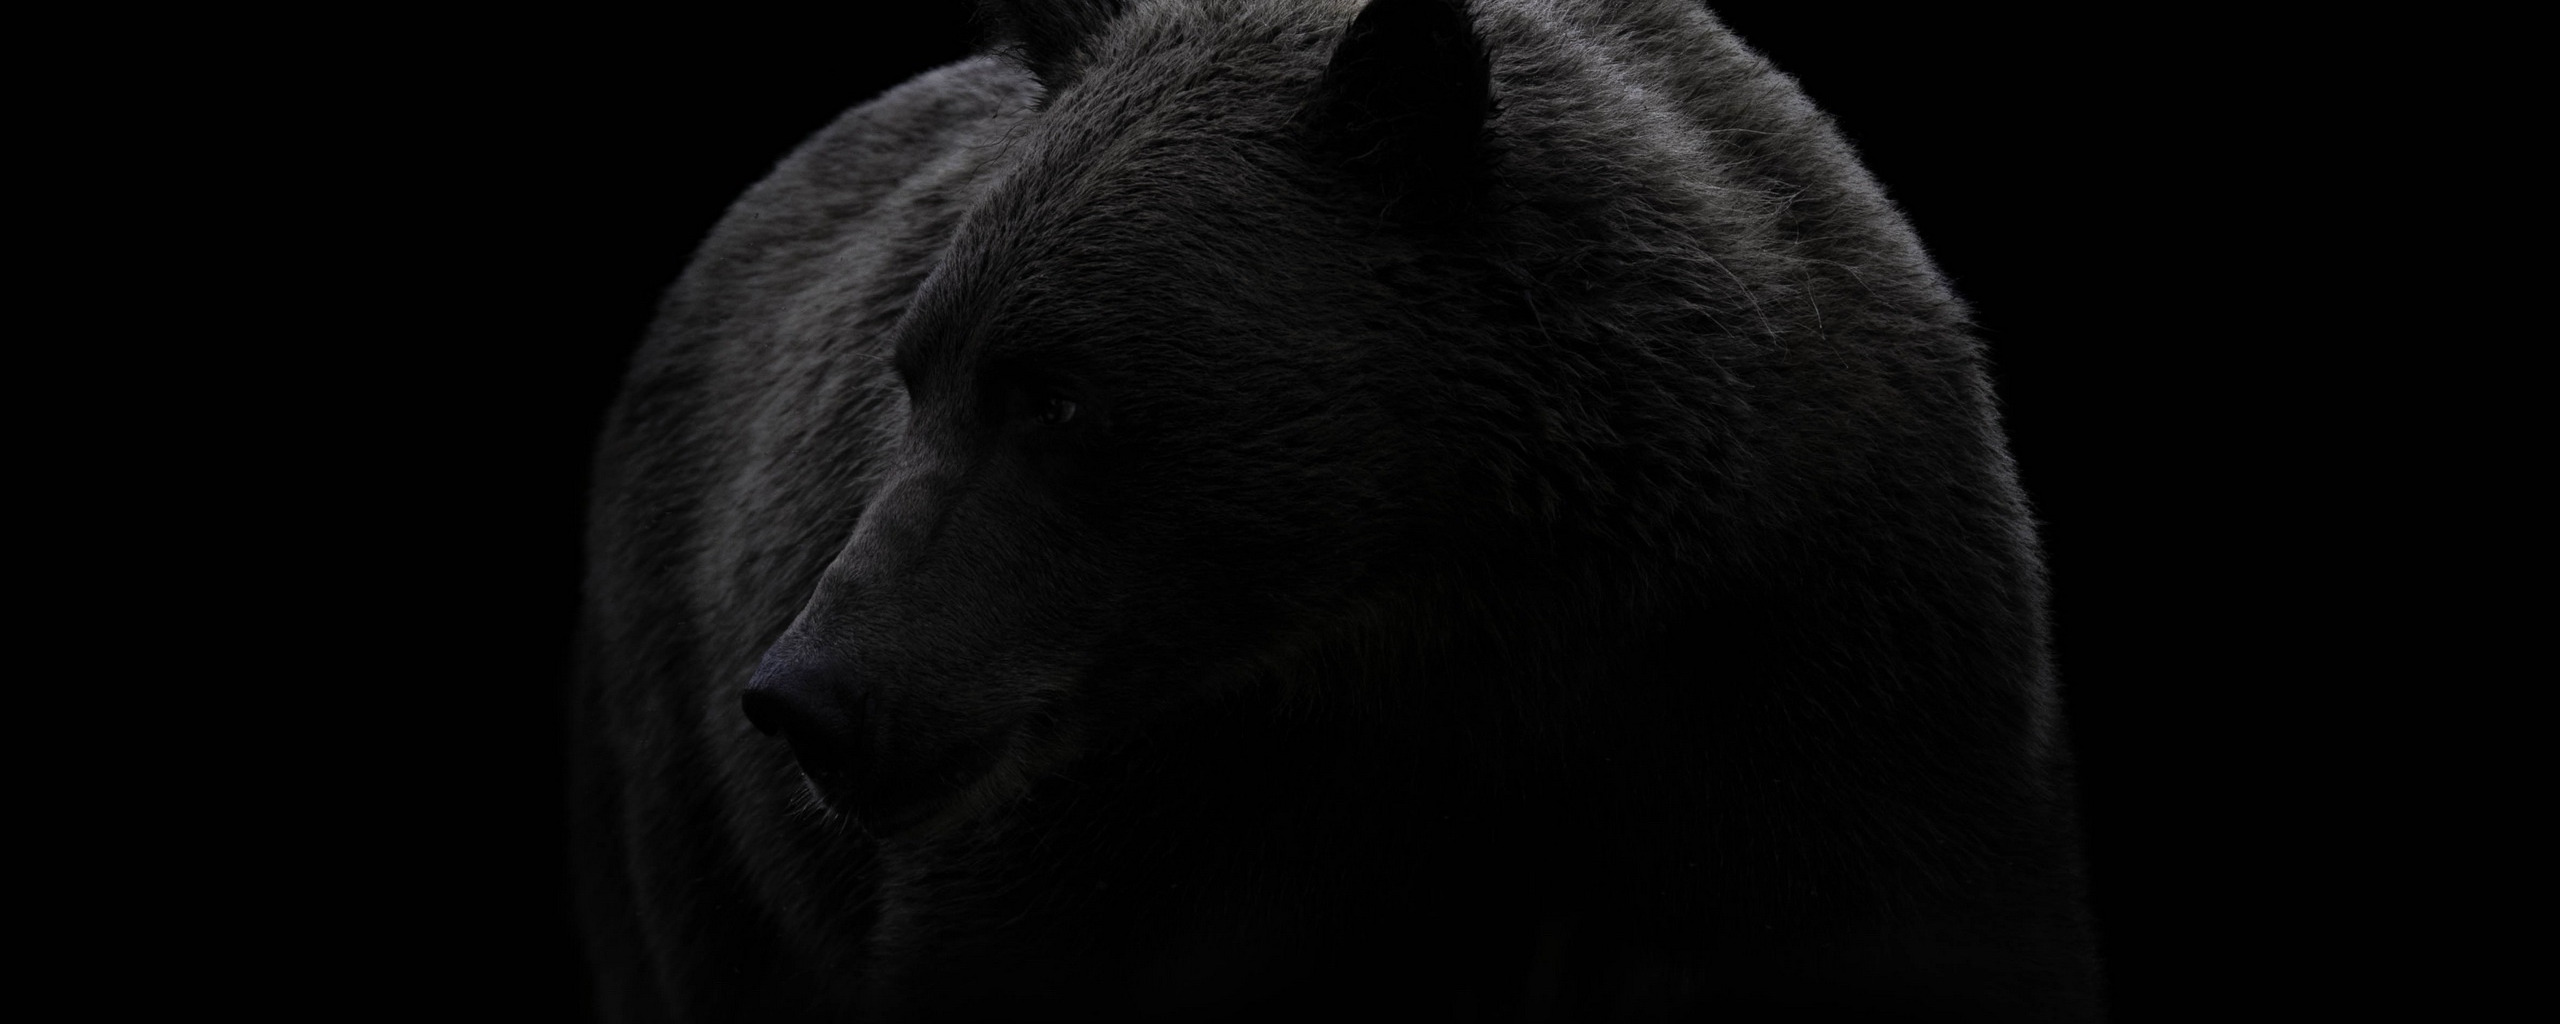 Медведь на черном фоне. Медведь на темном фоне. Обои на рабочий стол медведь. Черный медведь на черном фоне.